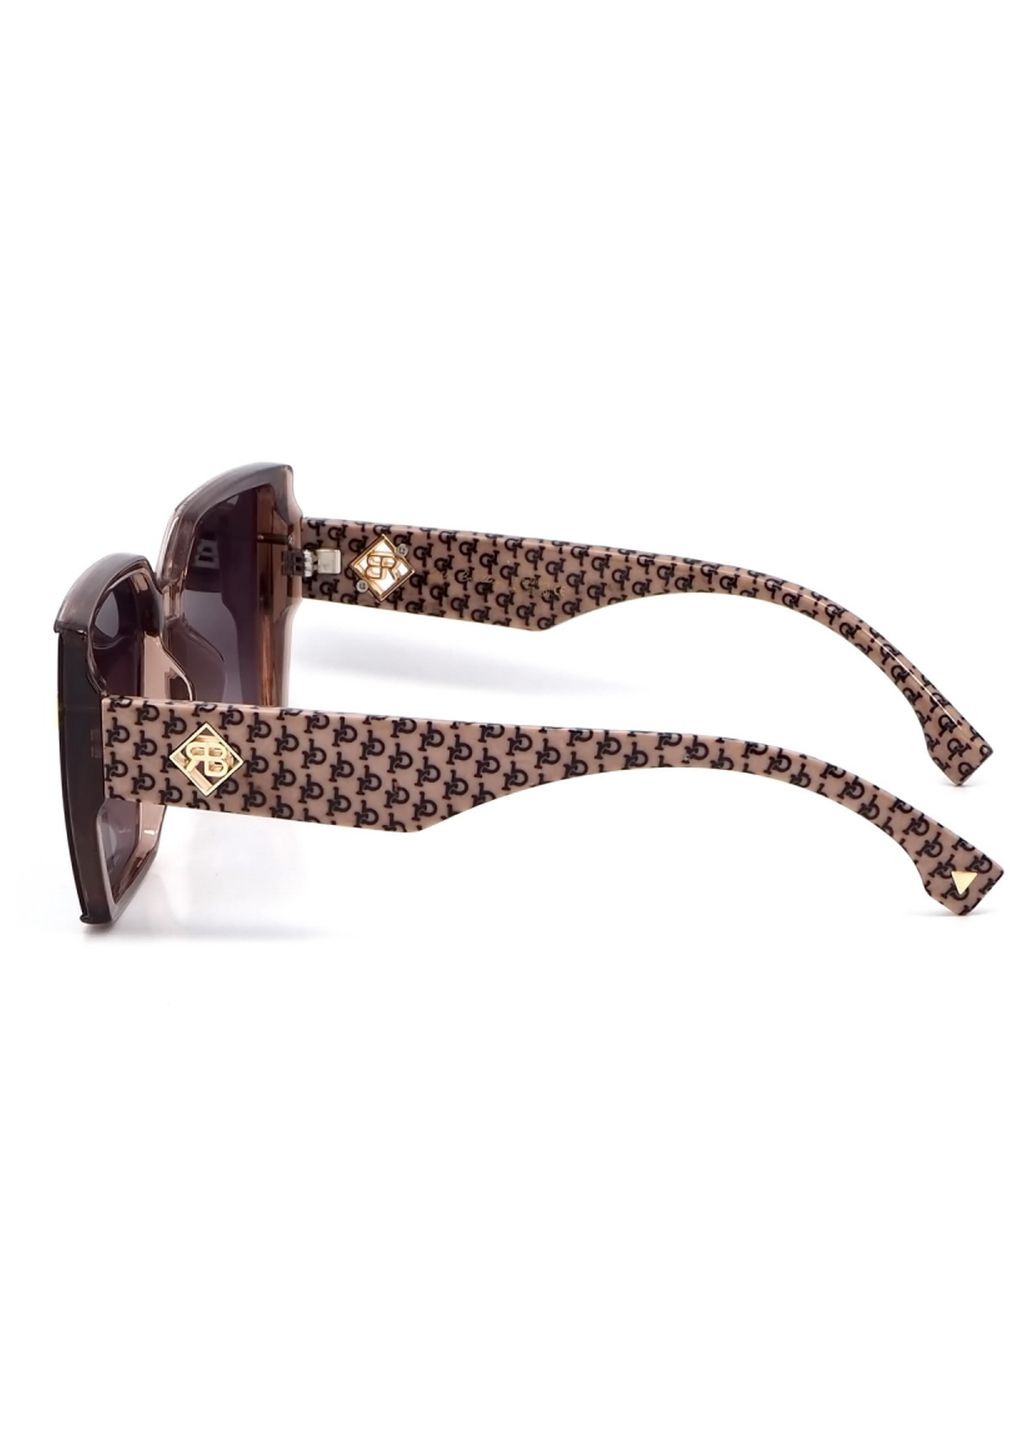 Купить Женские солнцезащитные очки Rita Bradley с поляризацией RB727 112061 в интернет-магазине